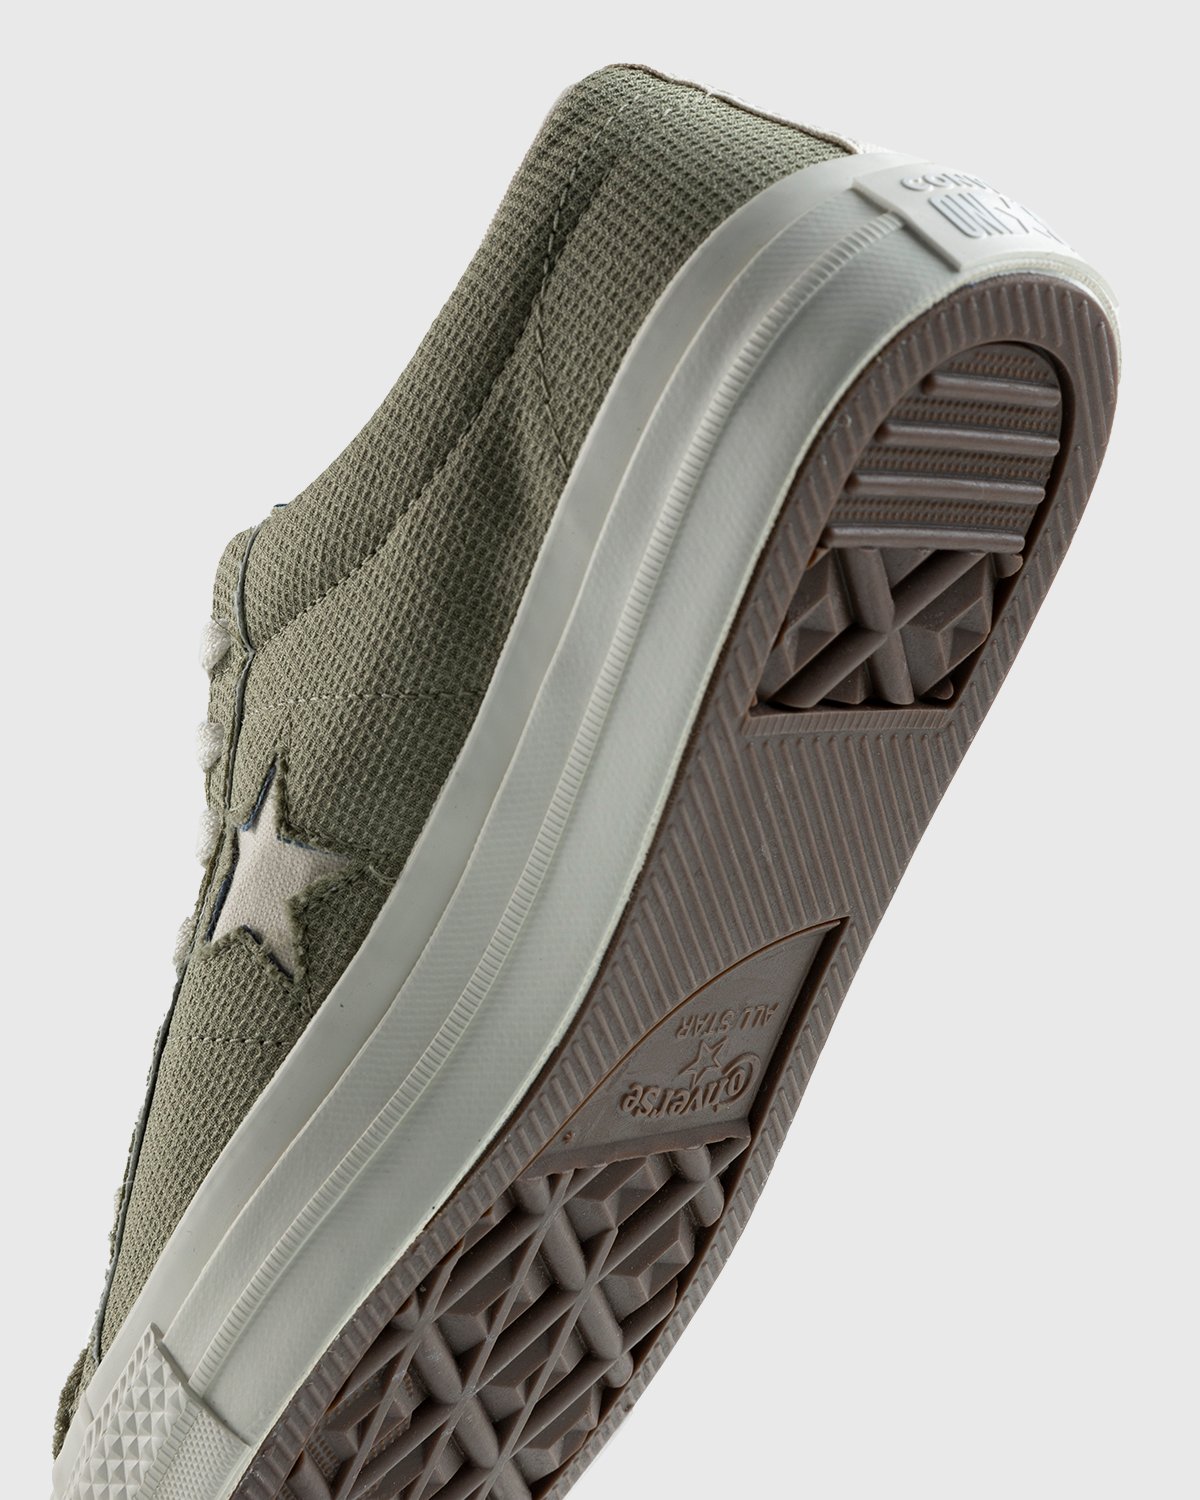 Converse - One Star Ox Indigo/Obsidian/Egret - Footwear - Green - Image 6